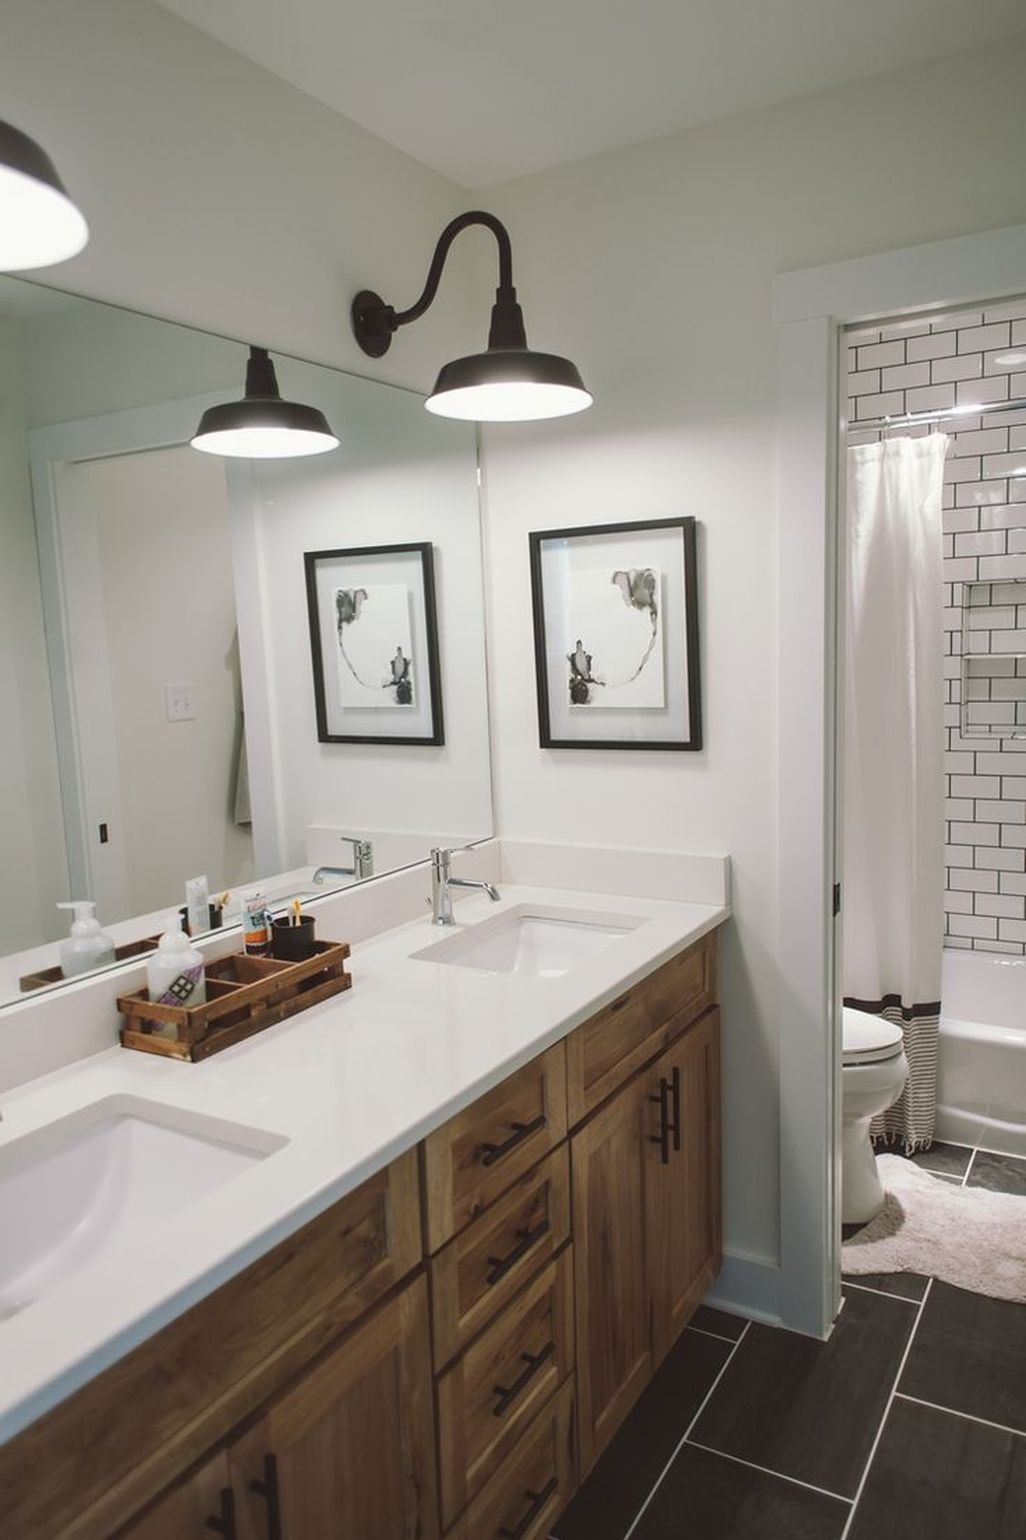 Fresh Rustic Farmhouse Master Bathroom Remodel Ideas 41